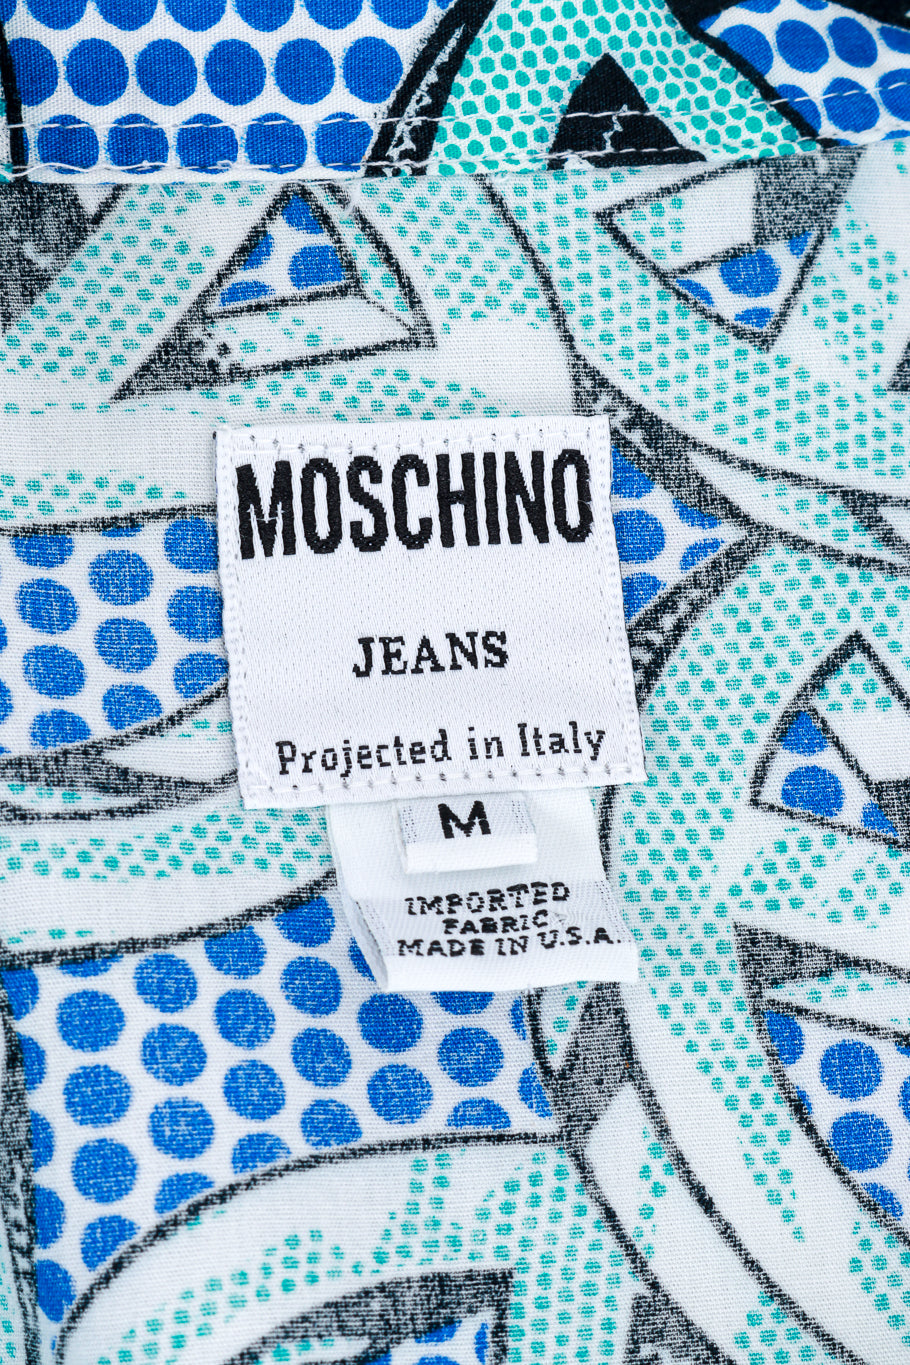 Vintage Moschino Peace Print Shirt signature label closeup @recess la